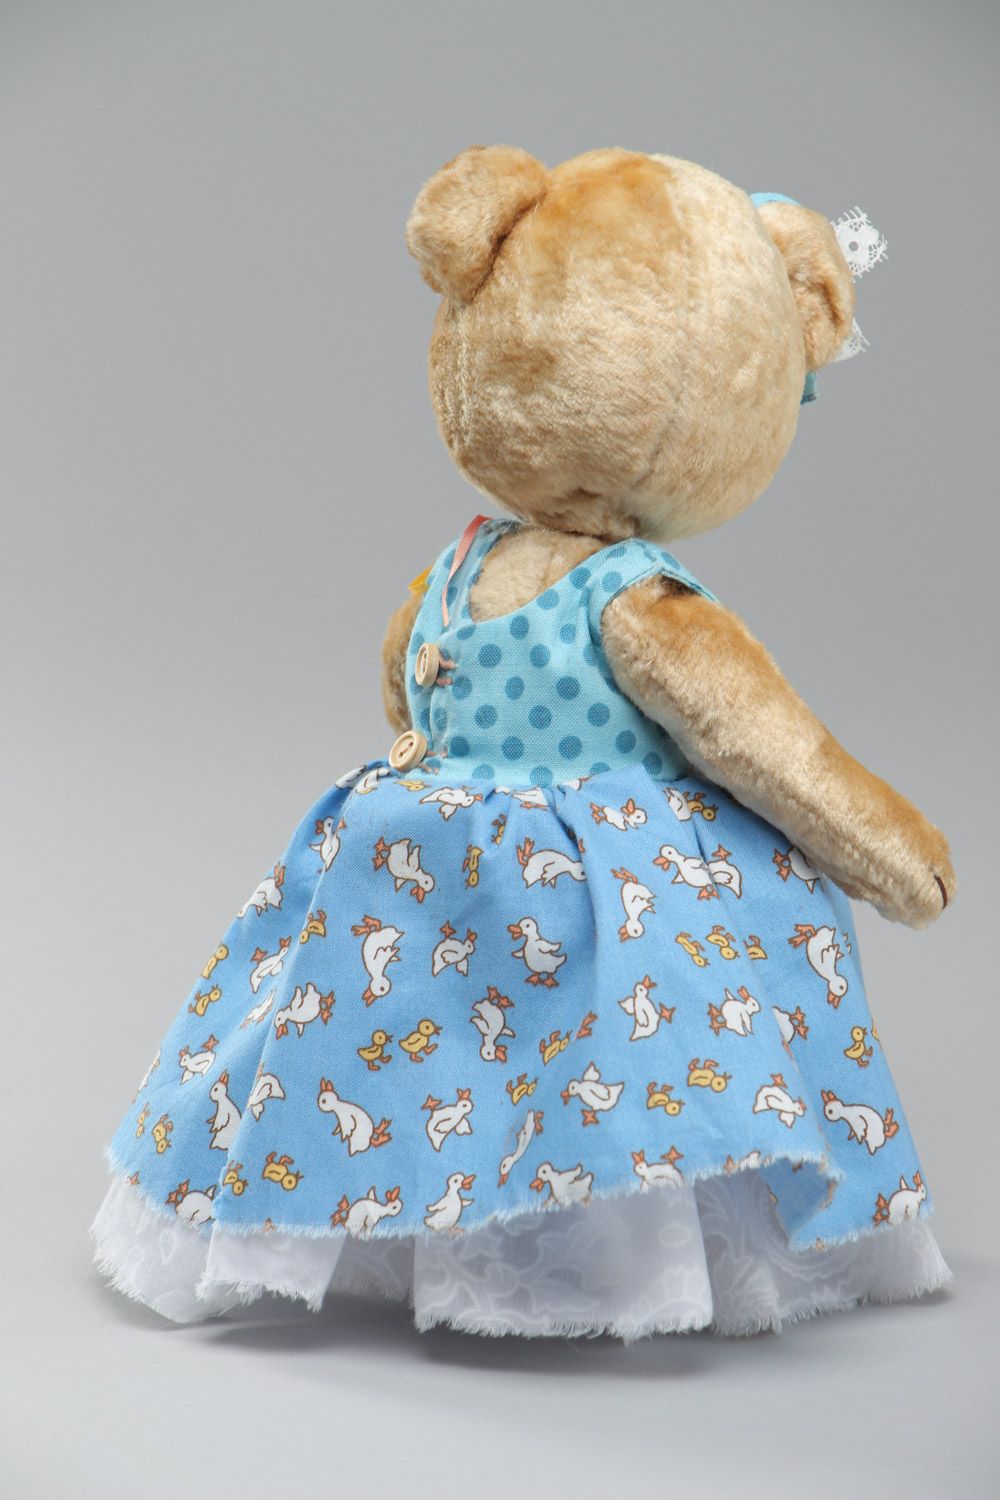 Plüsch Kuscheltier Bär im Trägerkleid handmade für Kinder schön foto 4